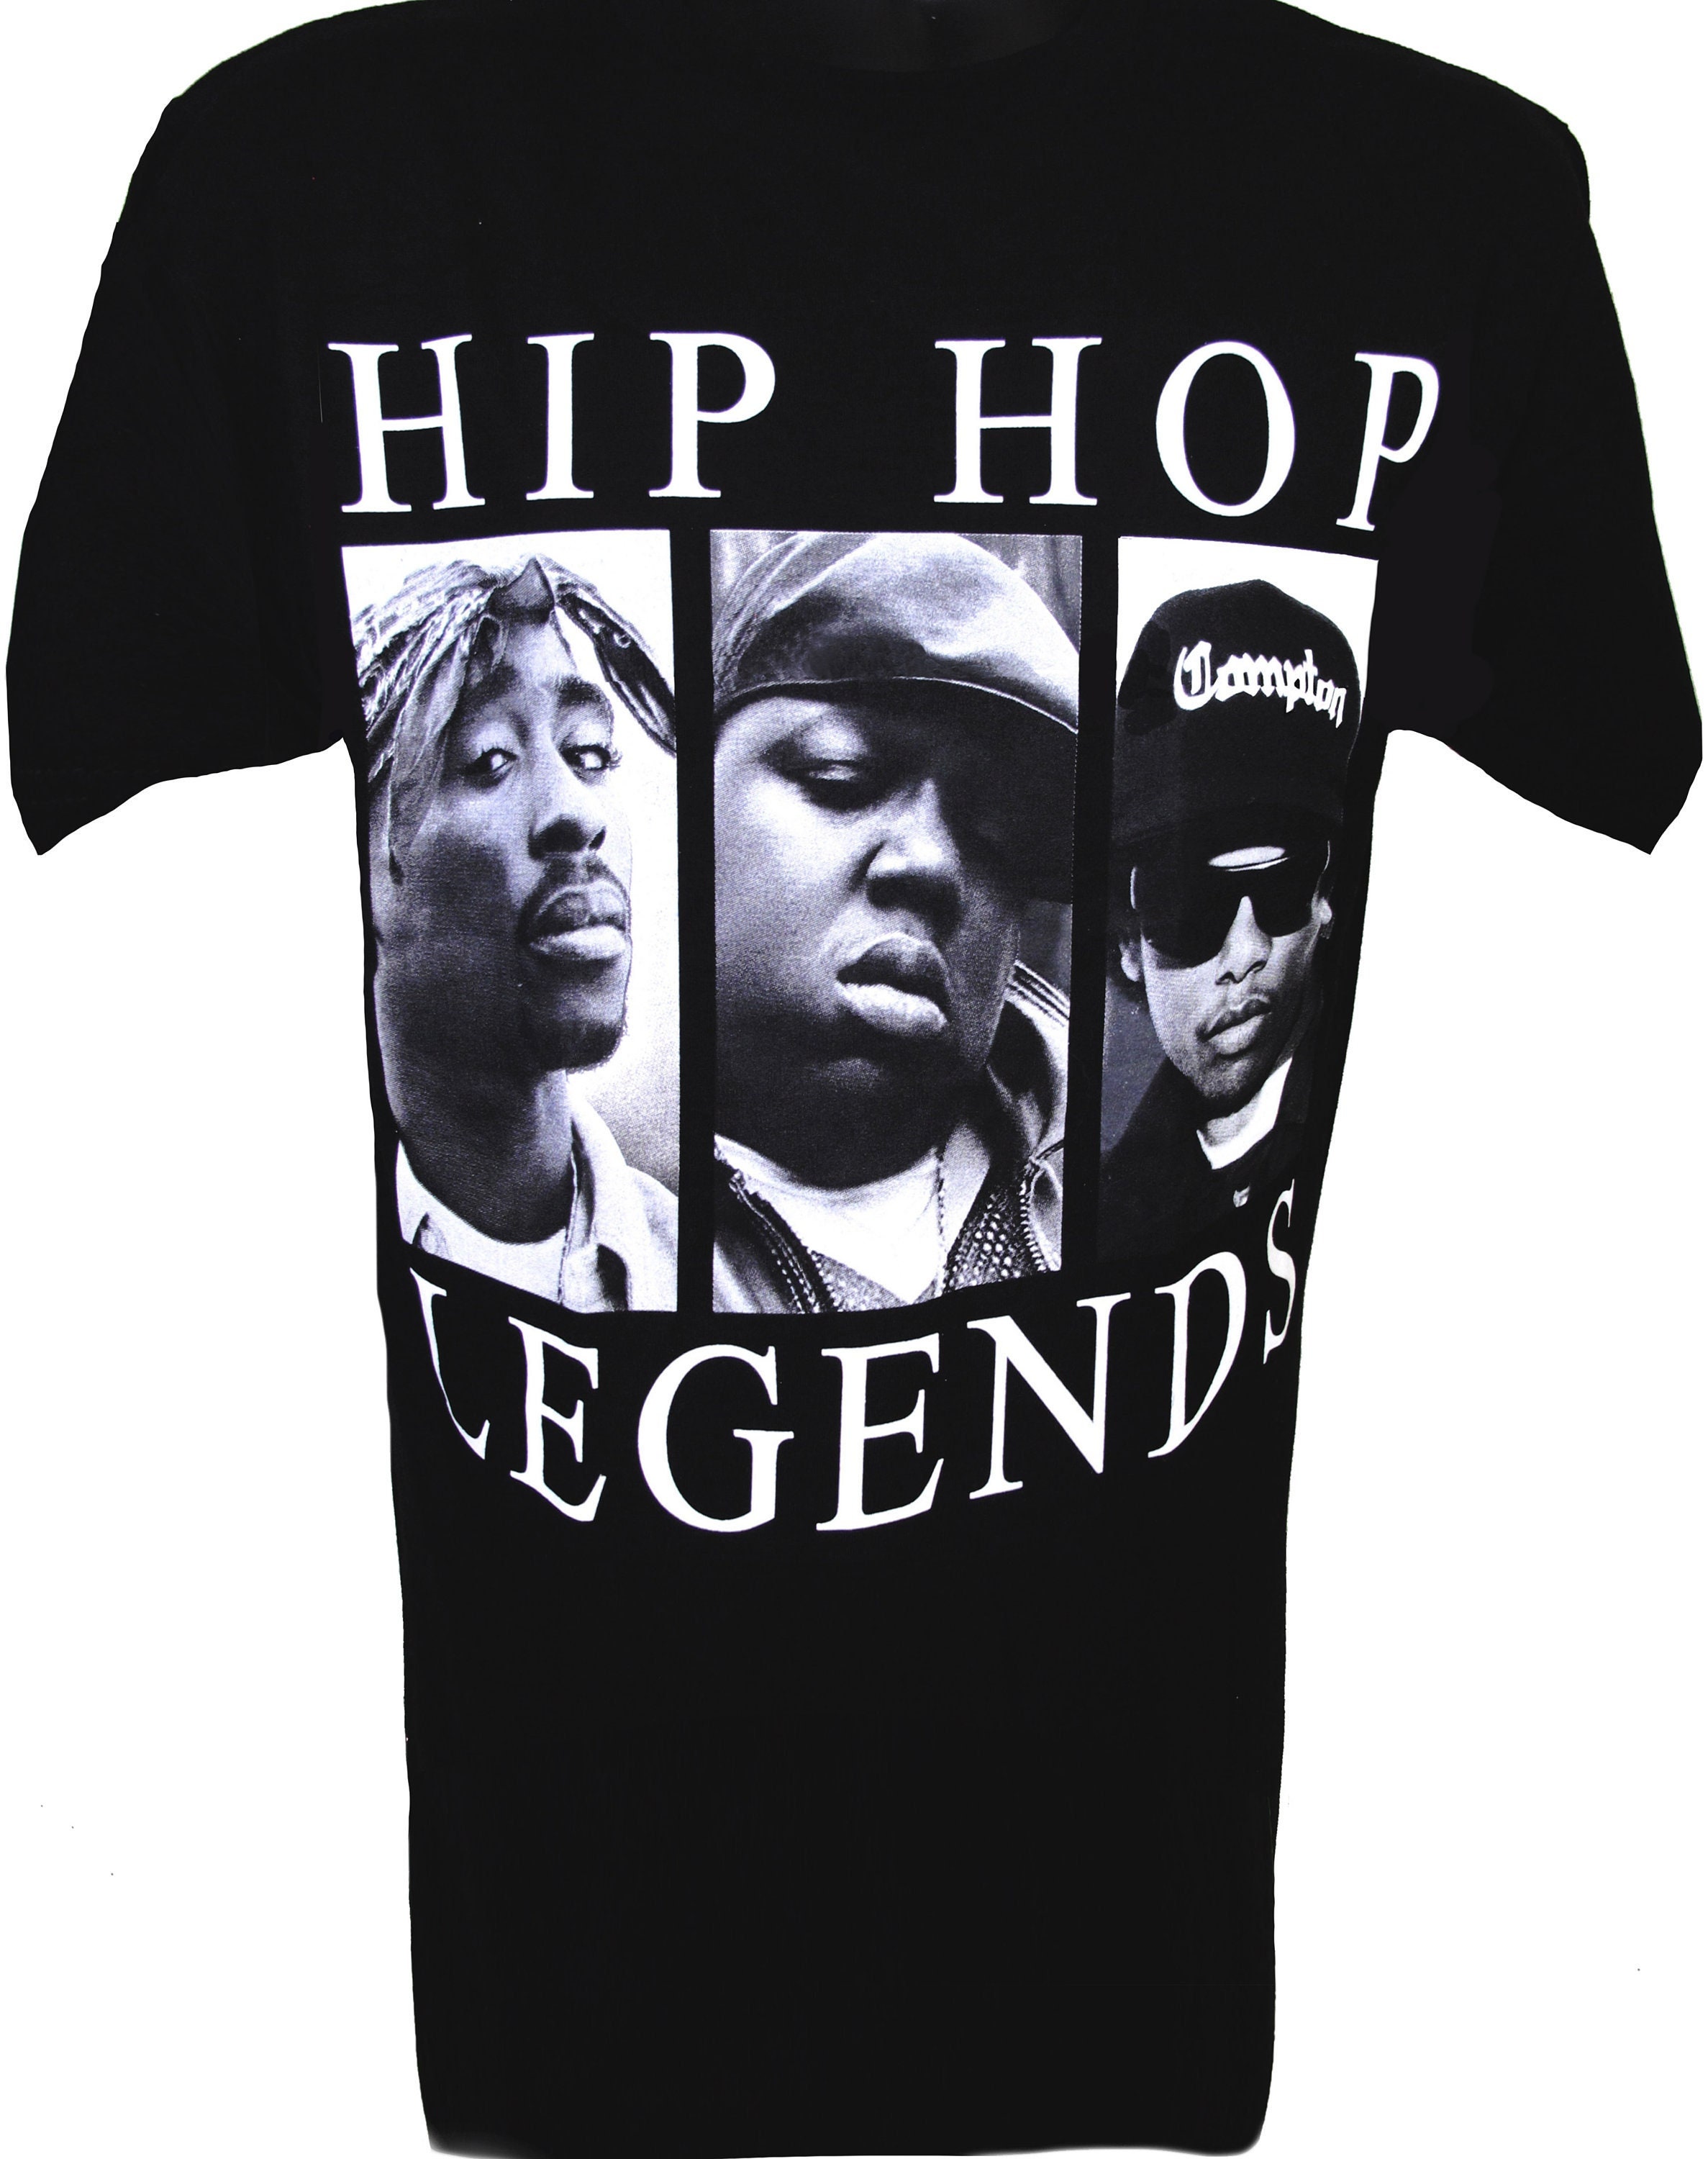 Eazy-E x BIGGIE X 2pac Shirt Hip Hop Legends